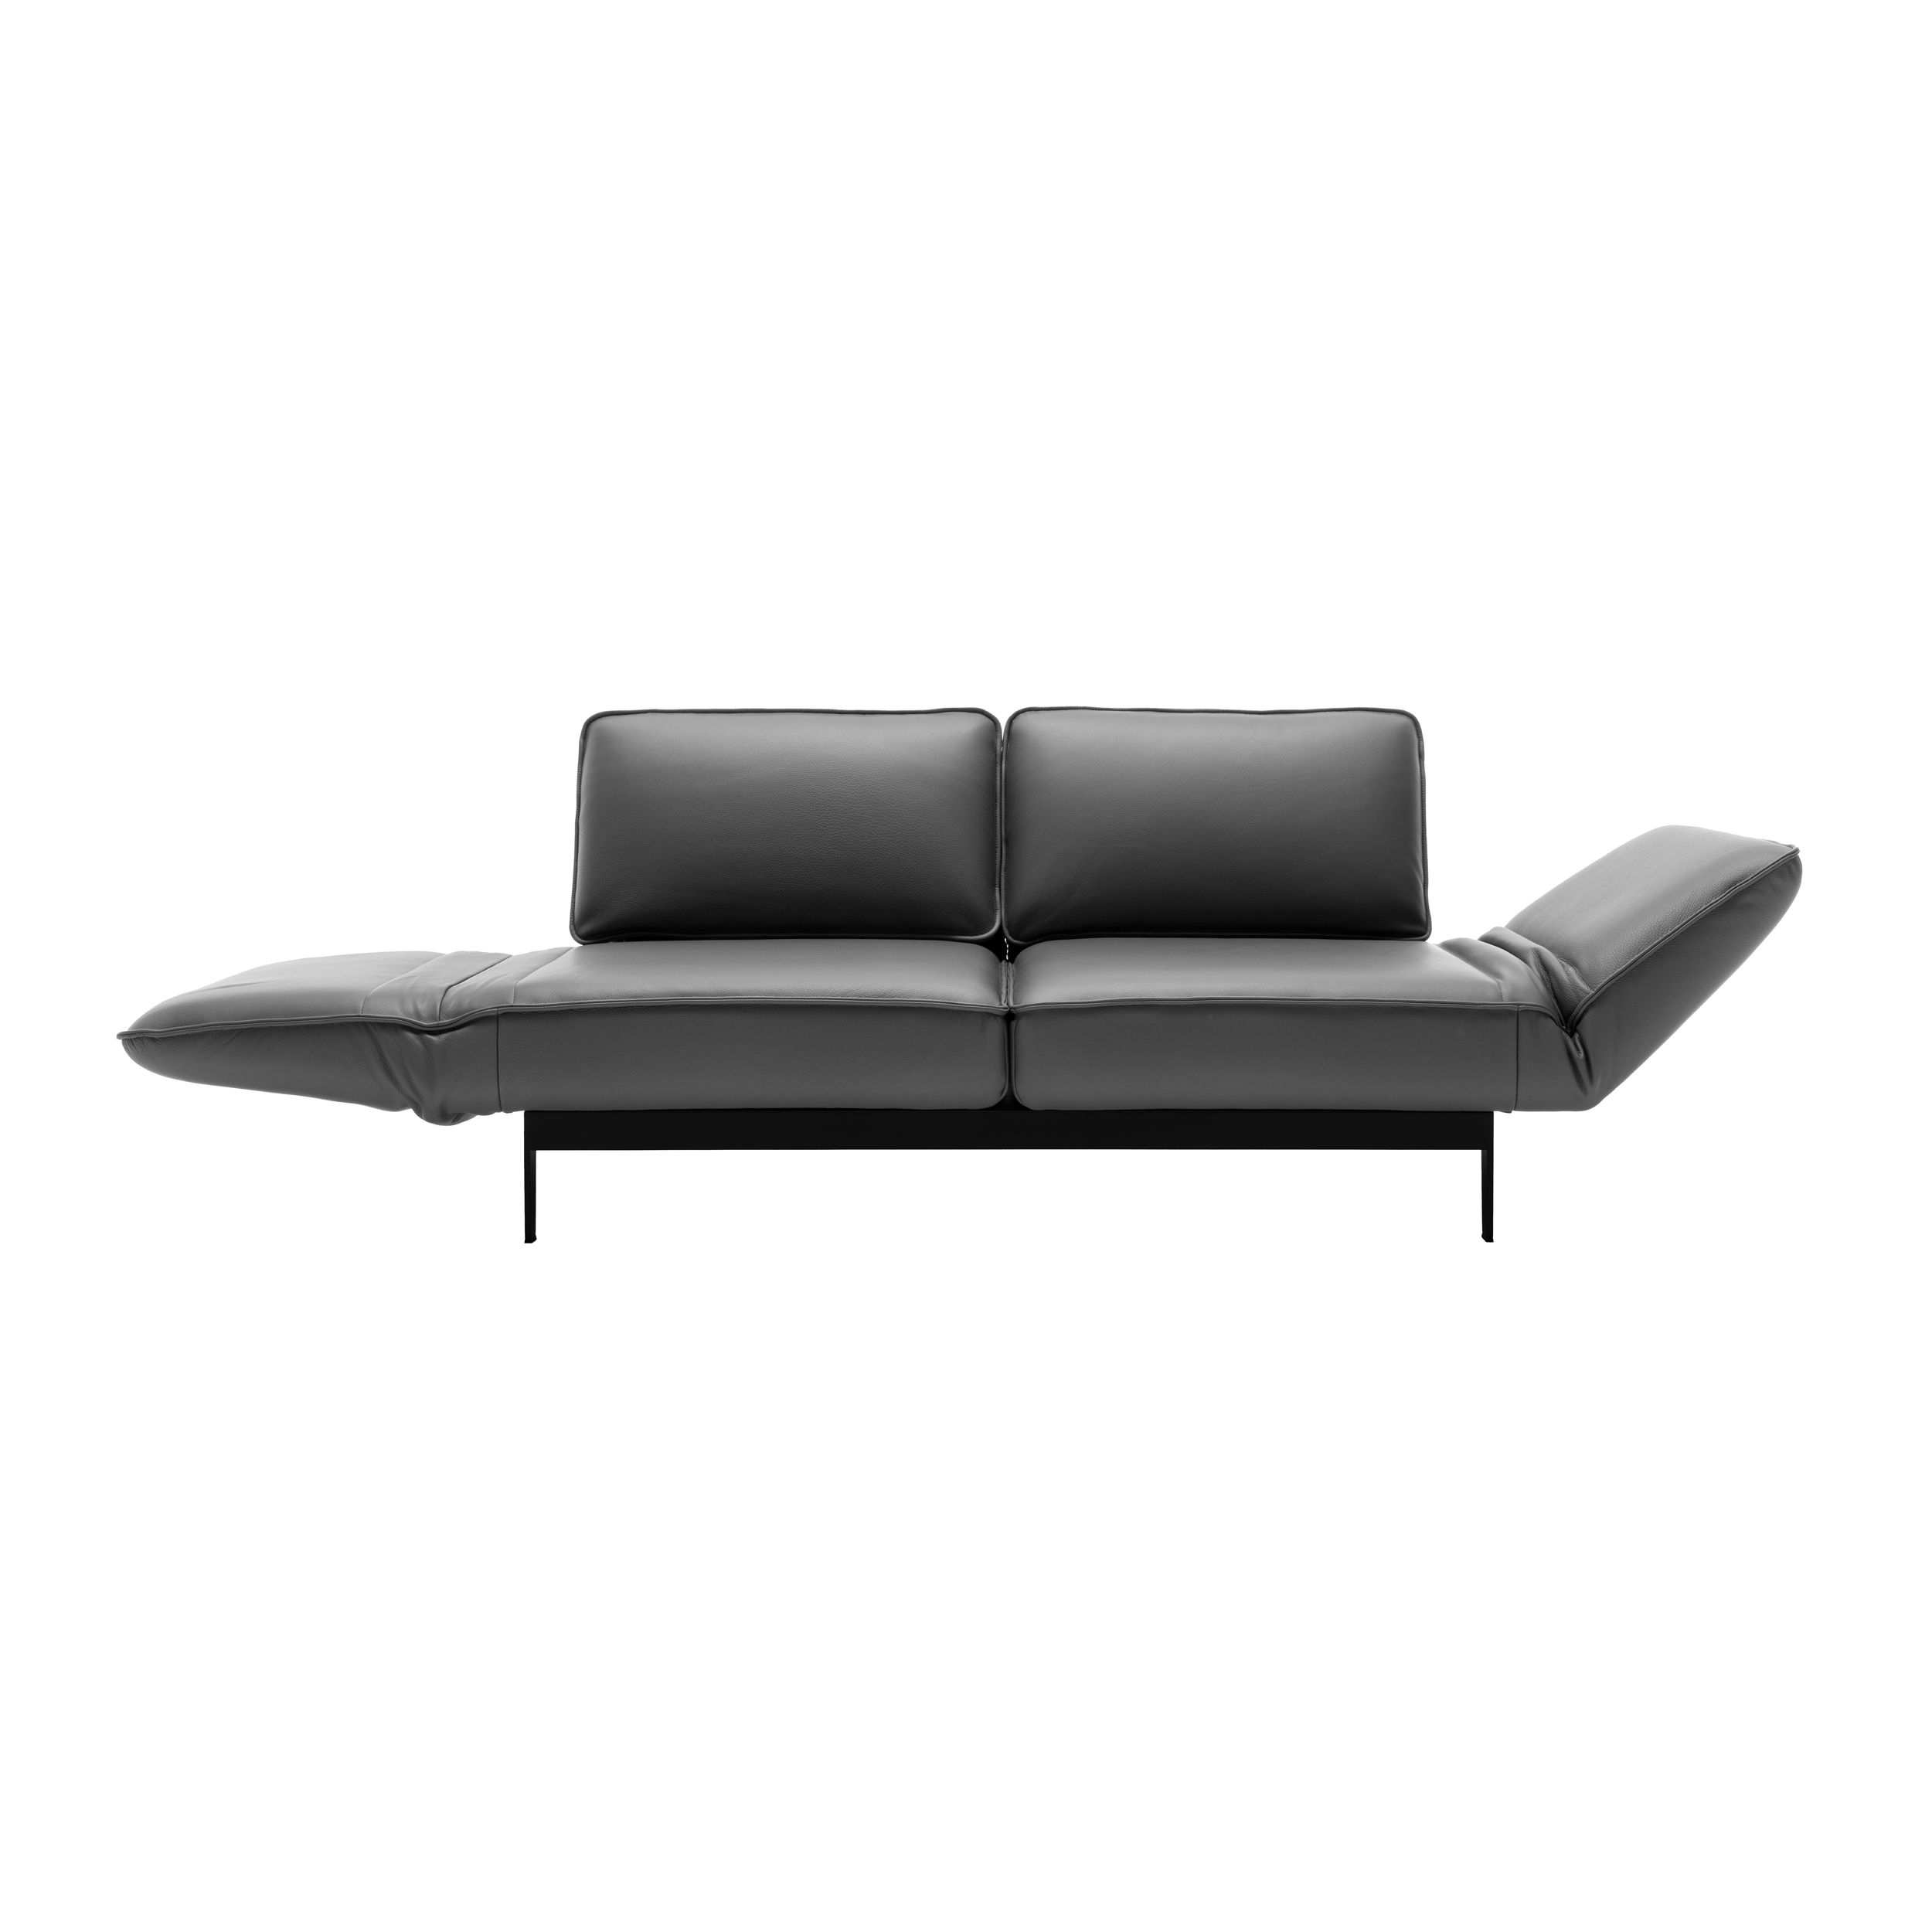 Sofa Mera in der Ansicht ausklappbare Sitzfläche von Rolf Benz in grau